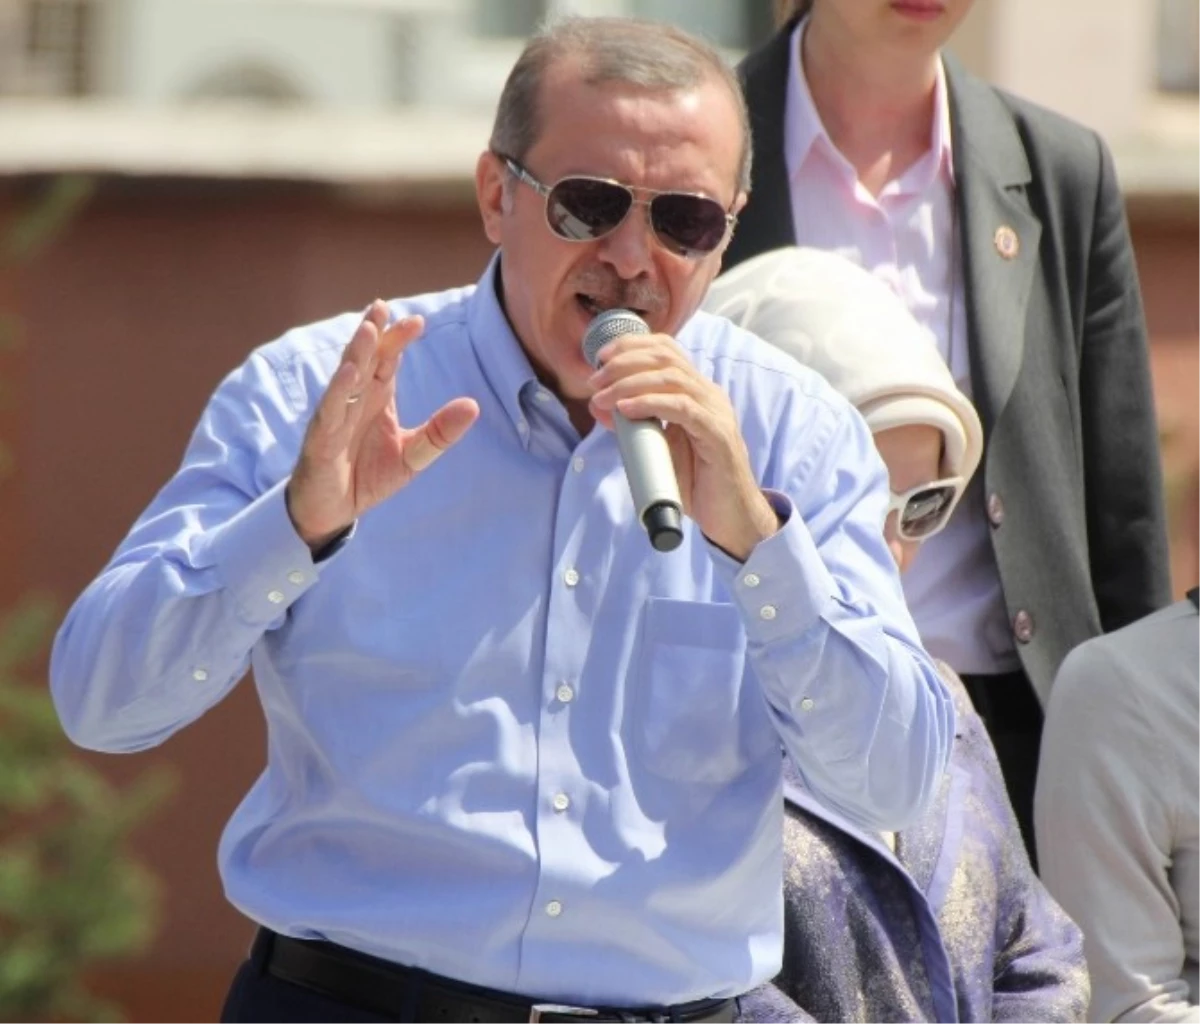 Başbakan Erdoğan: "Türk Bayrağını İndiren Bedelini Ağır Öder"